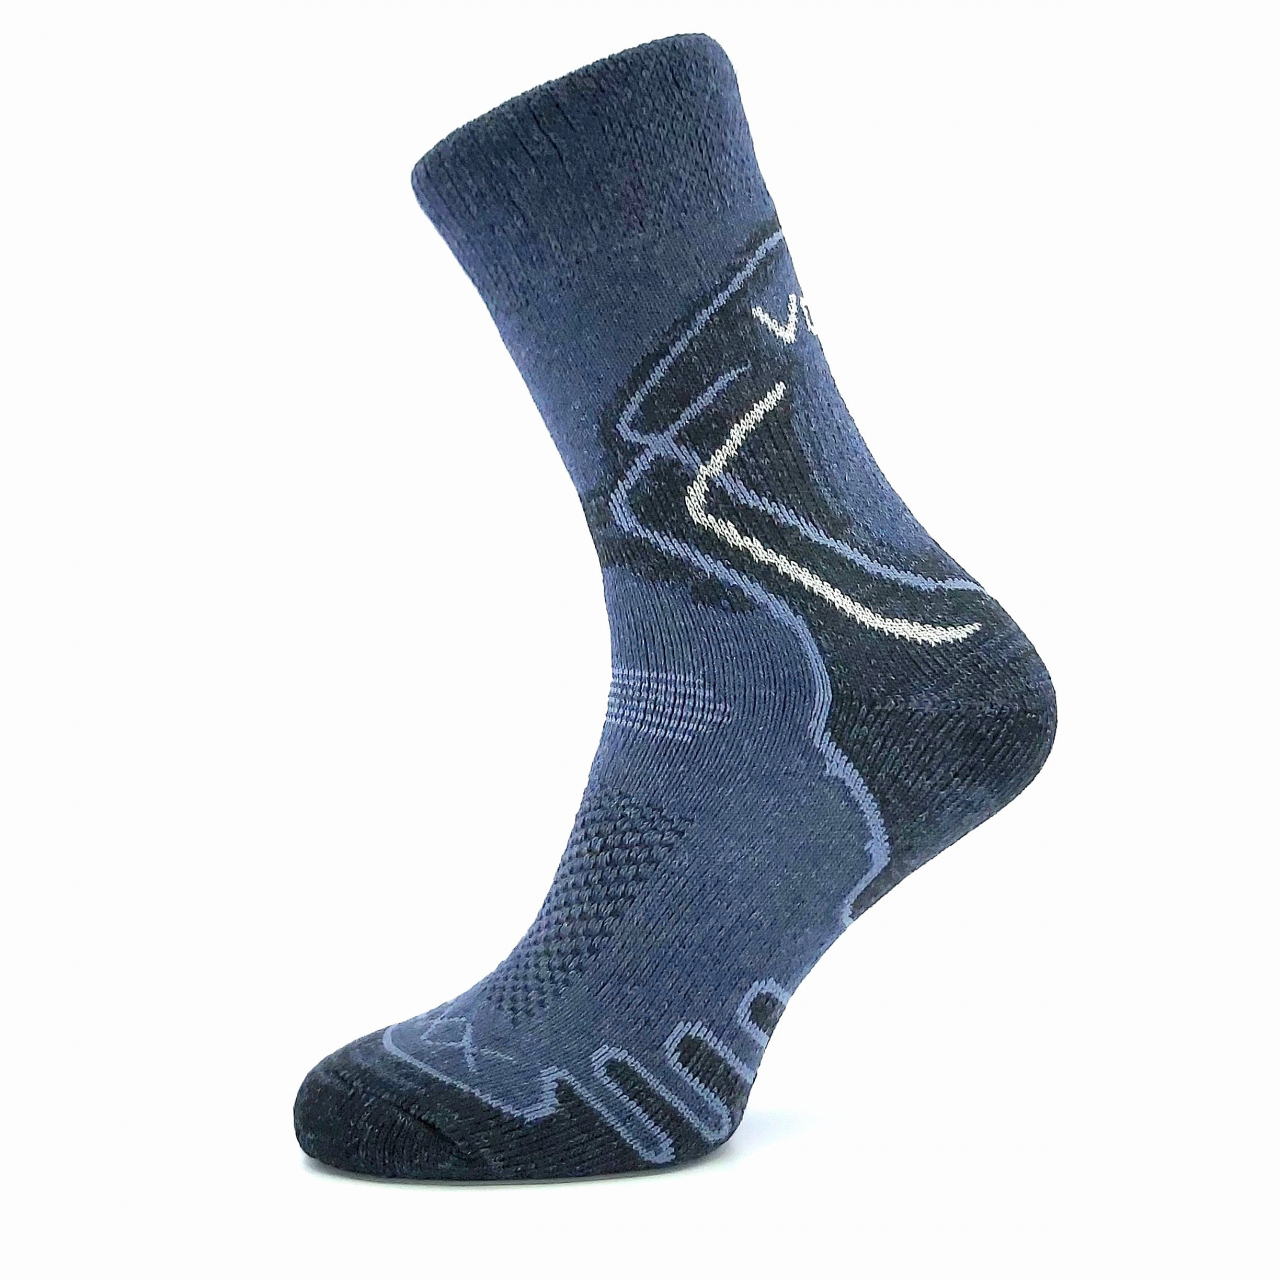 Ponožky trekingové unisex Voxx Limit III - tmavě modré, 43-46